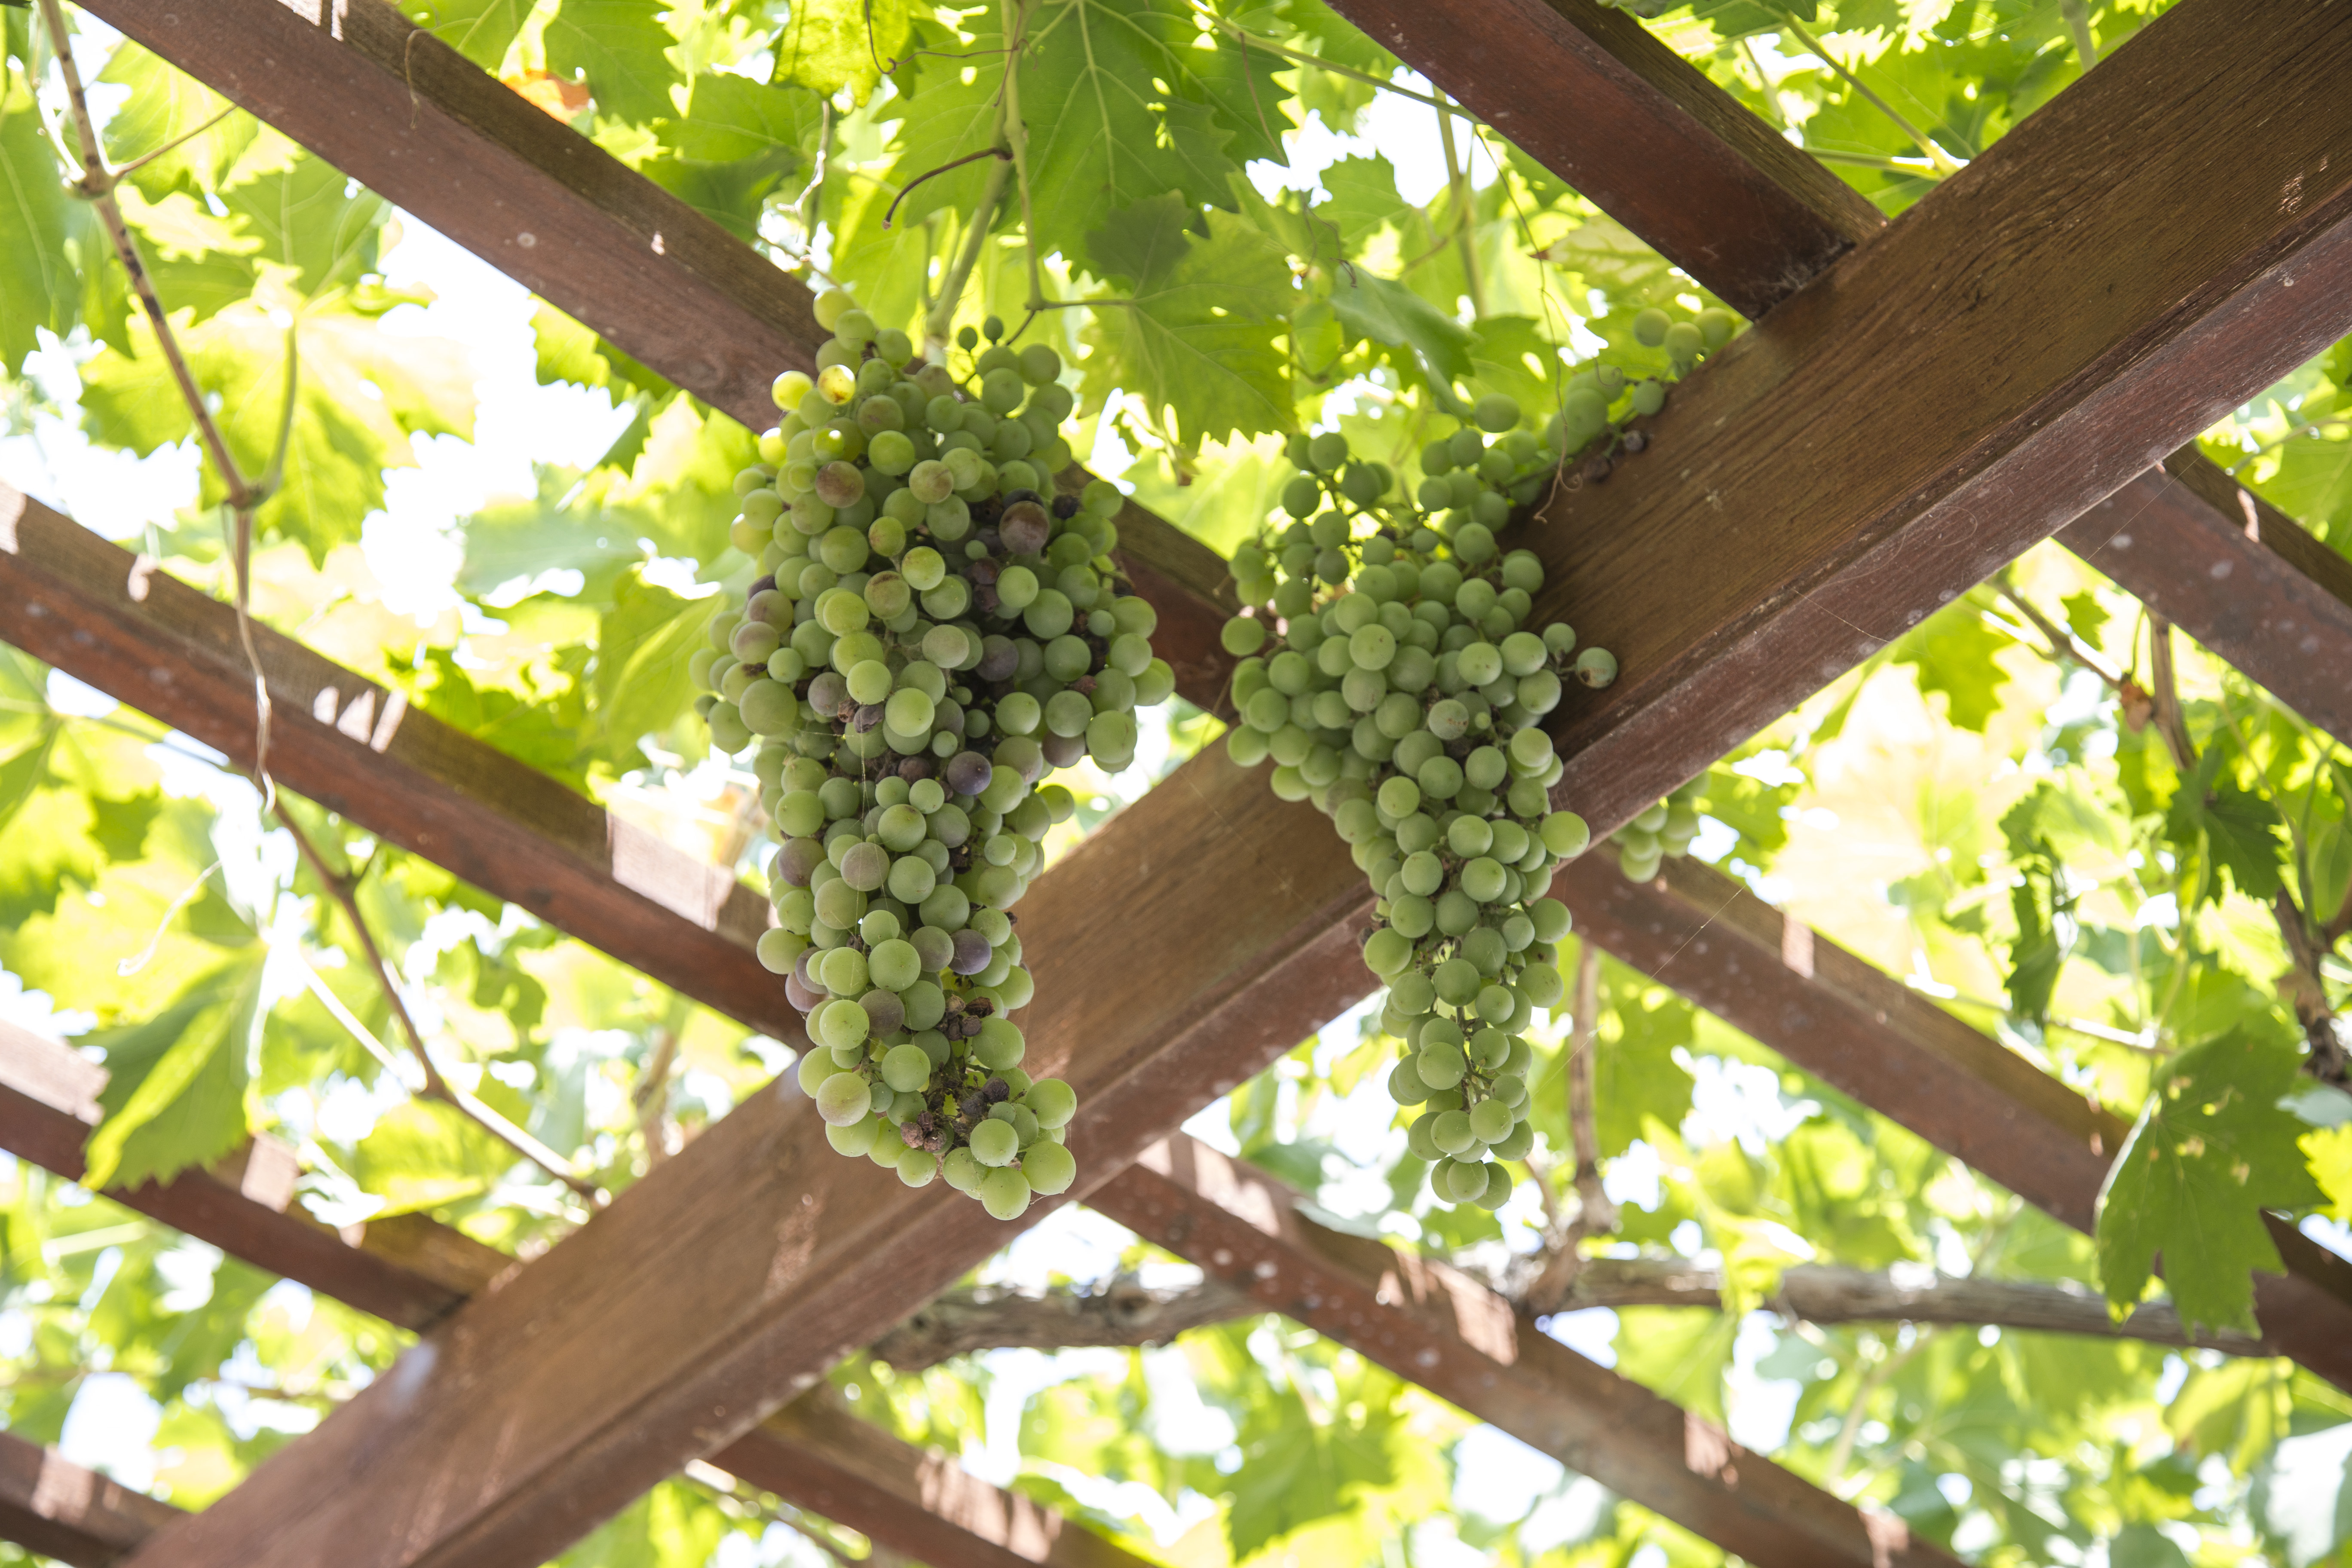 A pergola with grape vines